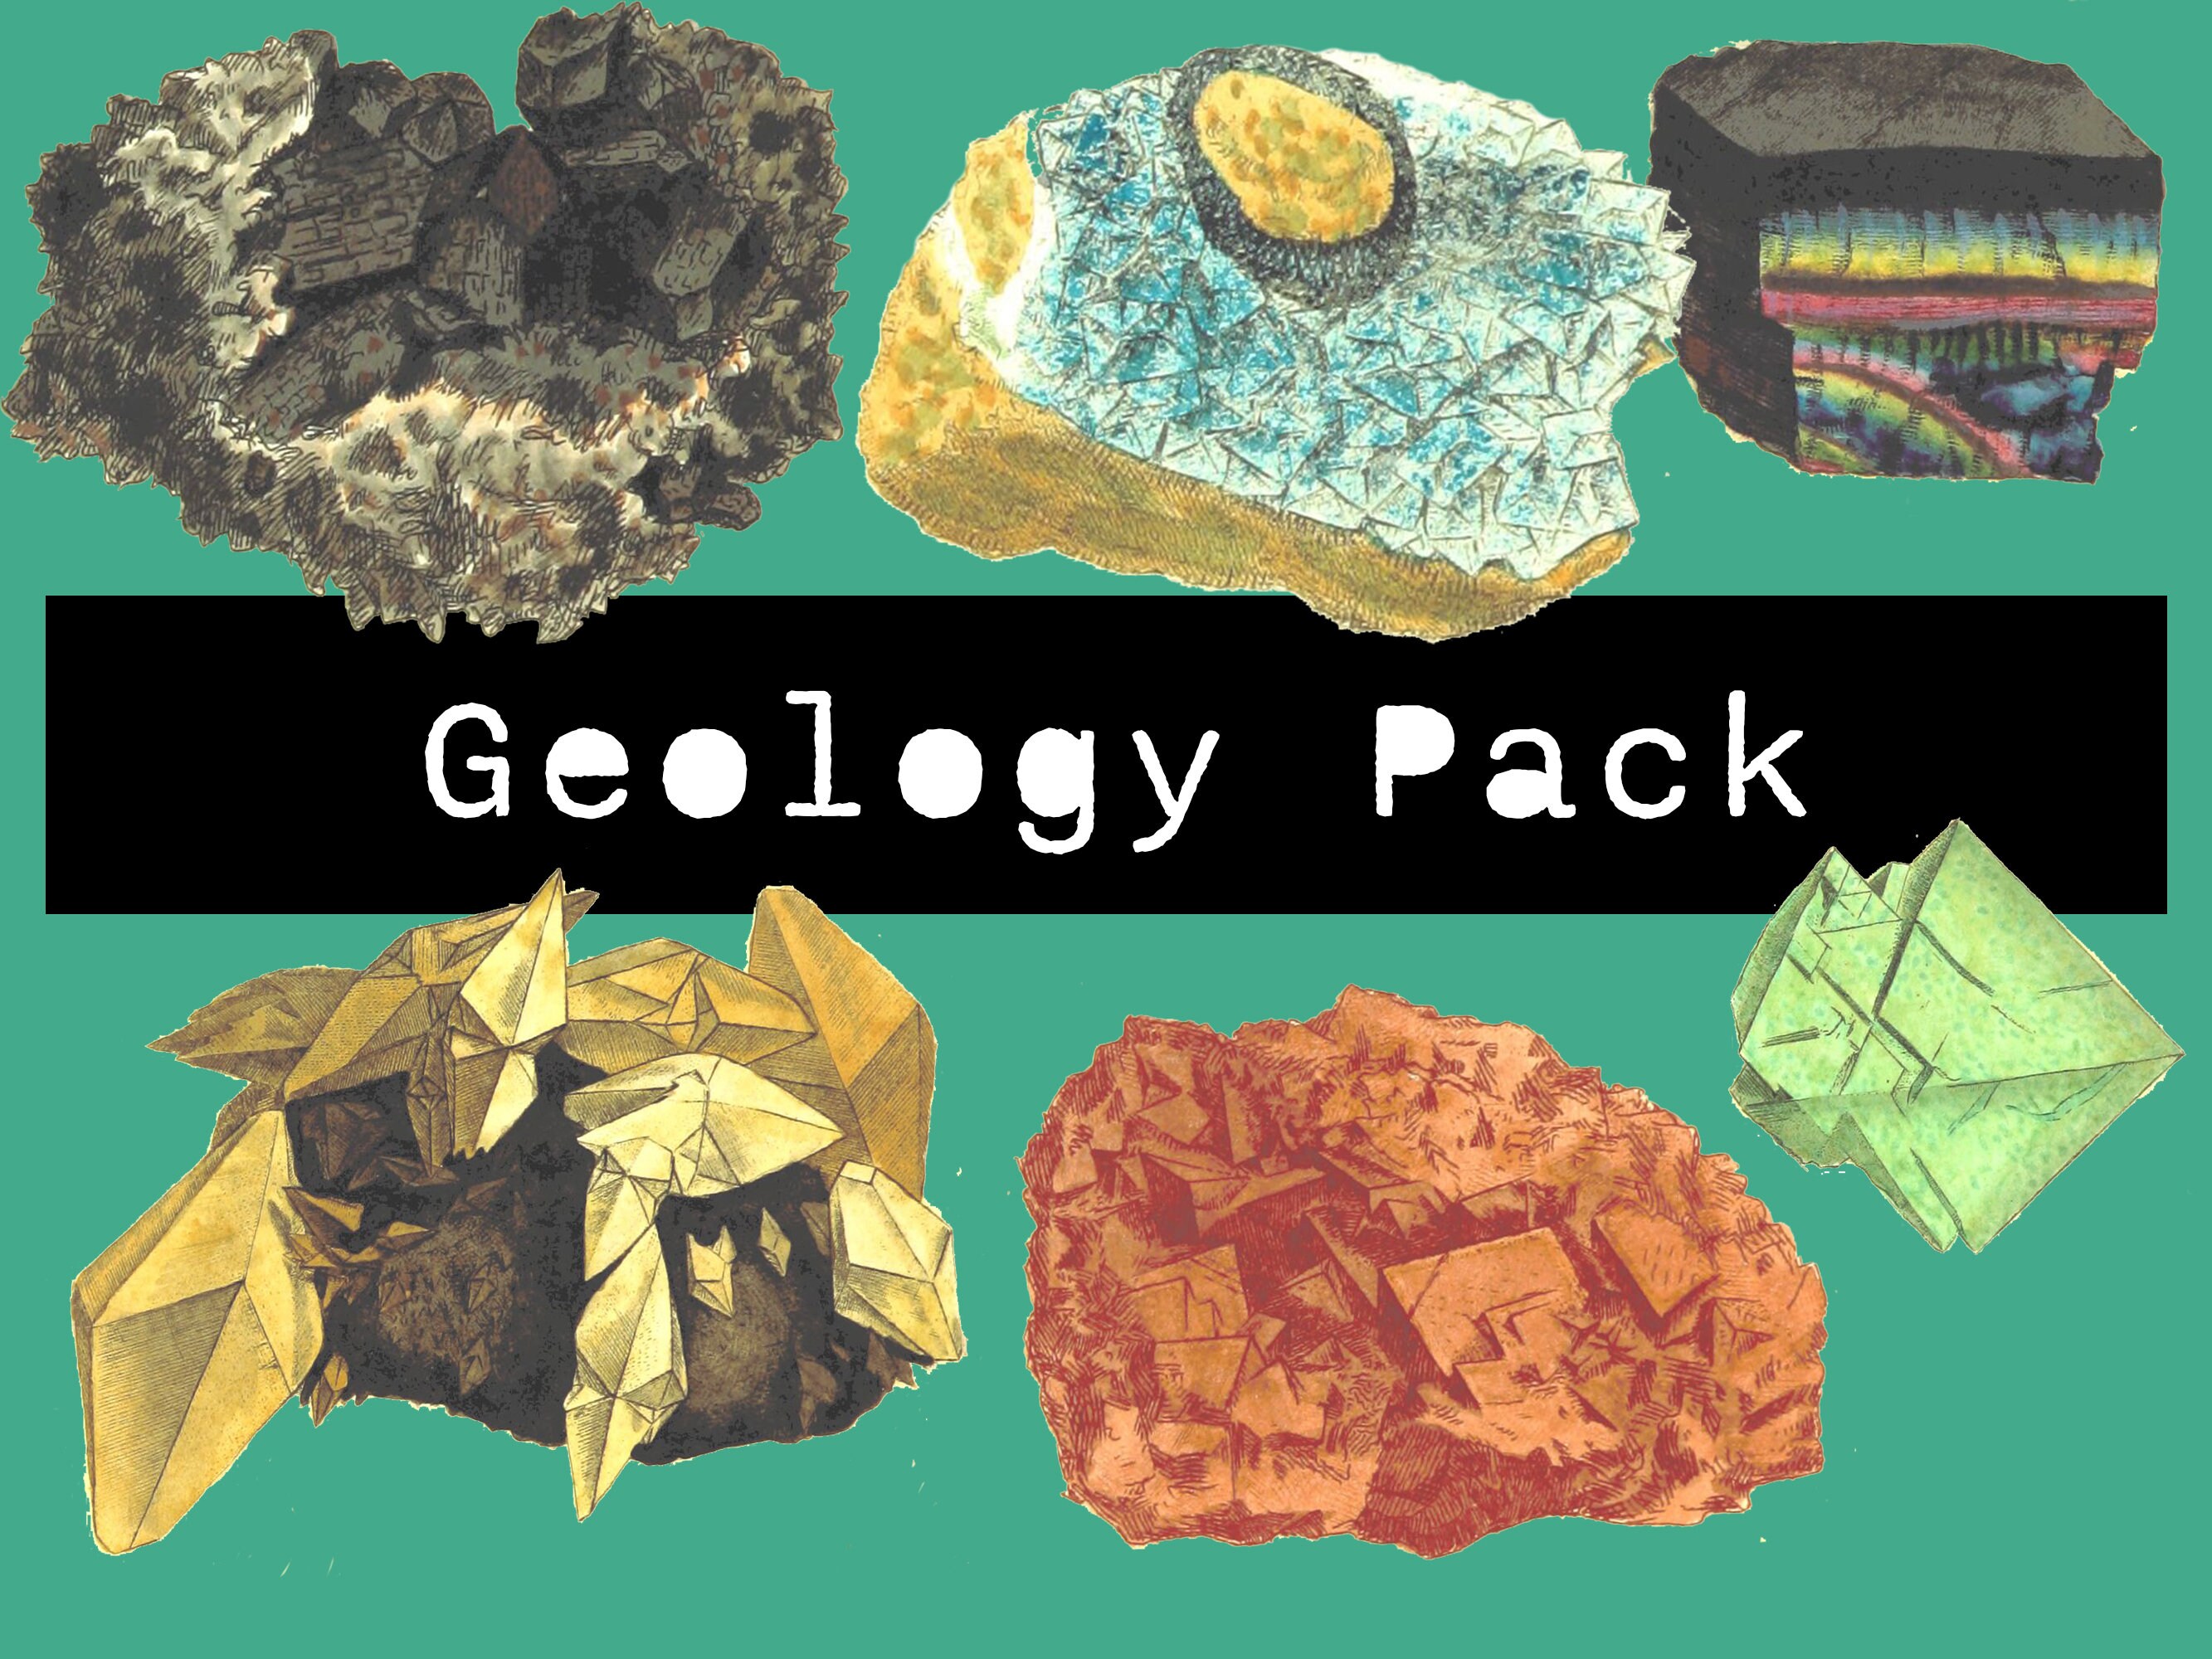 Colorido collage de fotos digitales Diseño de rocas y minerales | Camiseta  para niños